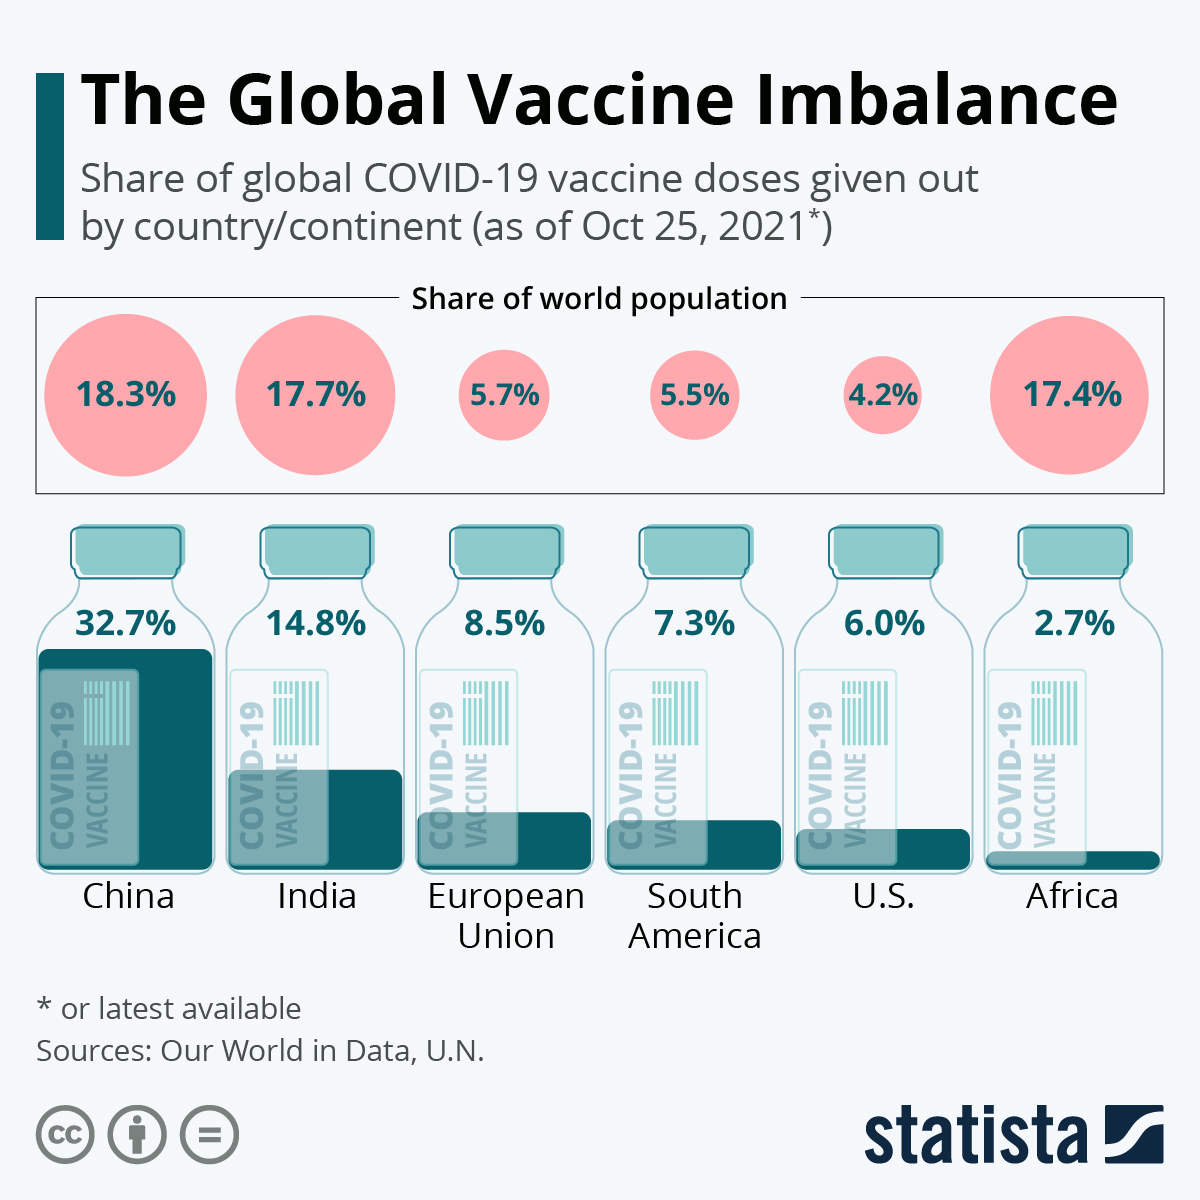 The Global Vaccine Imbalance